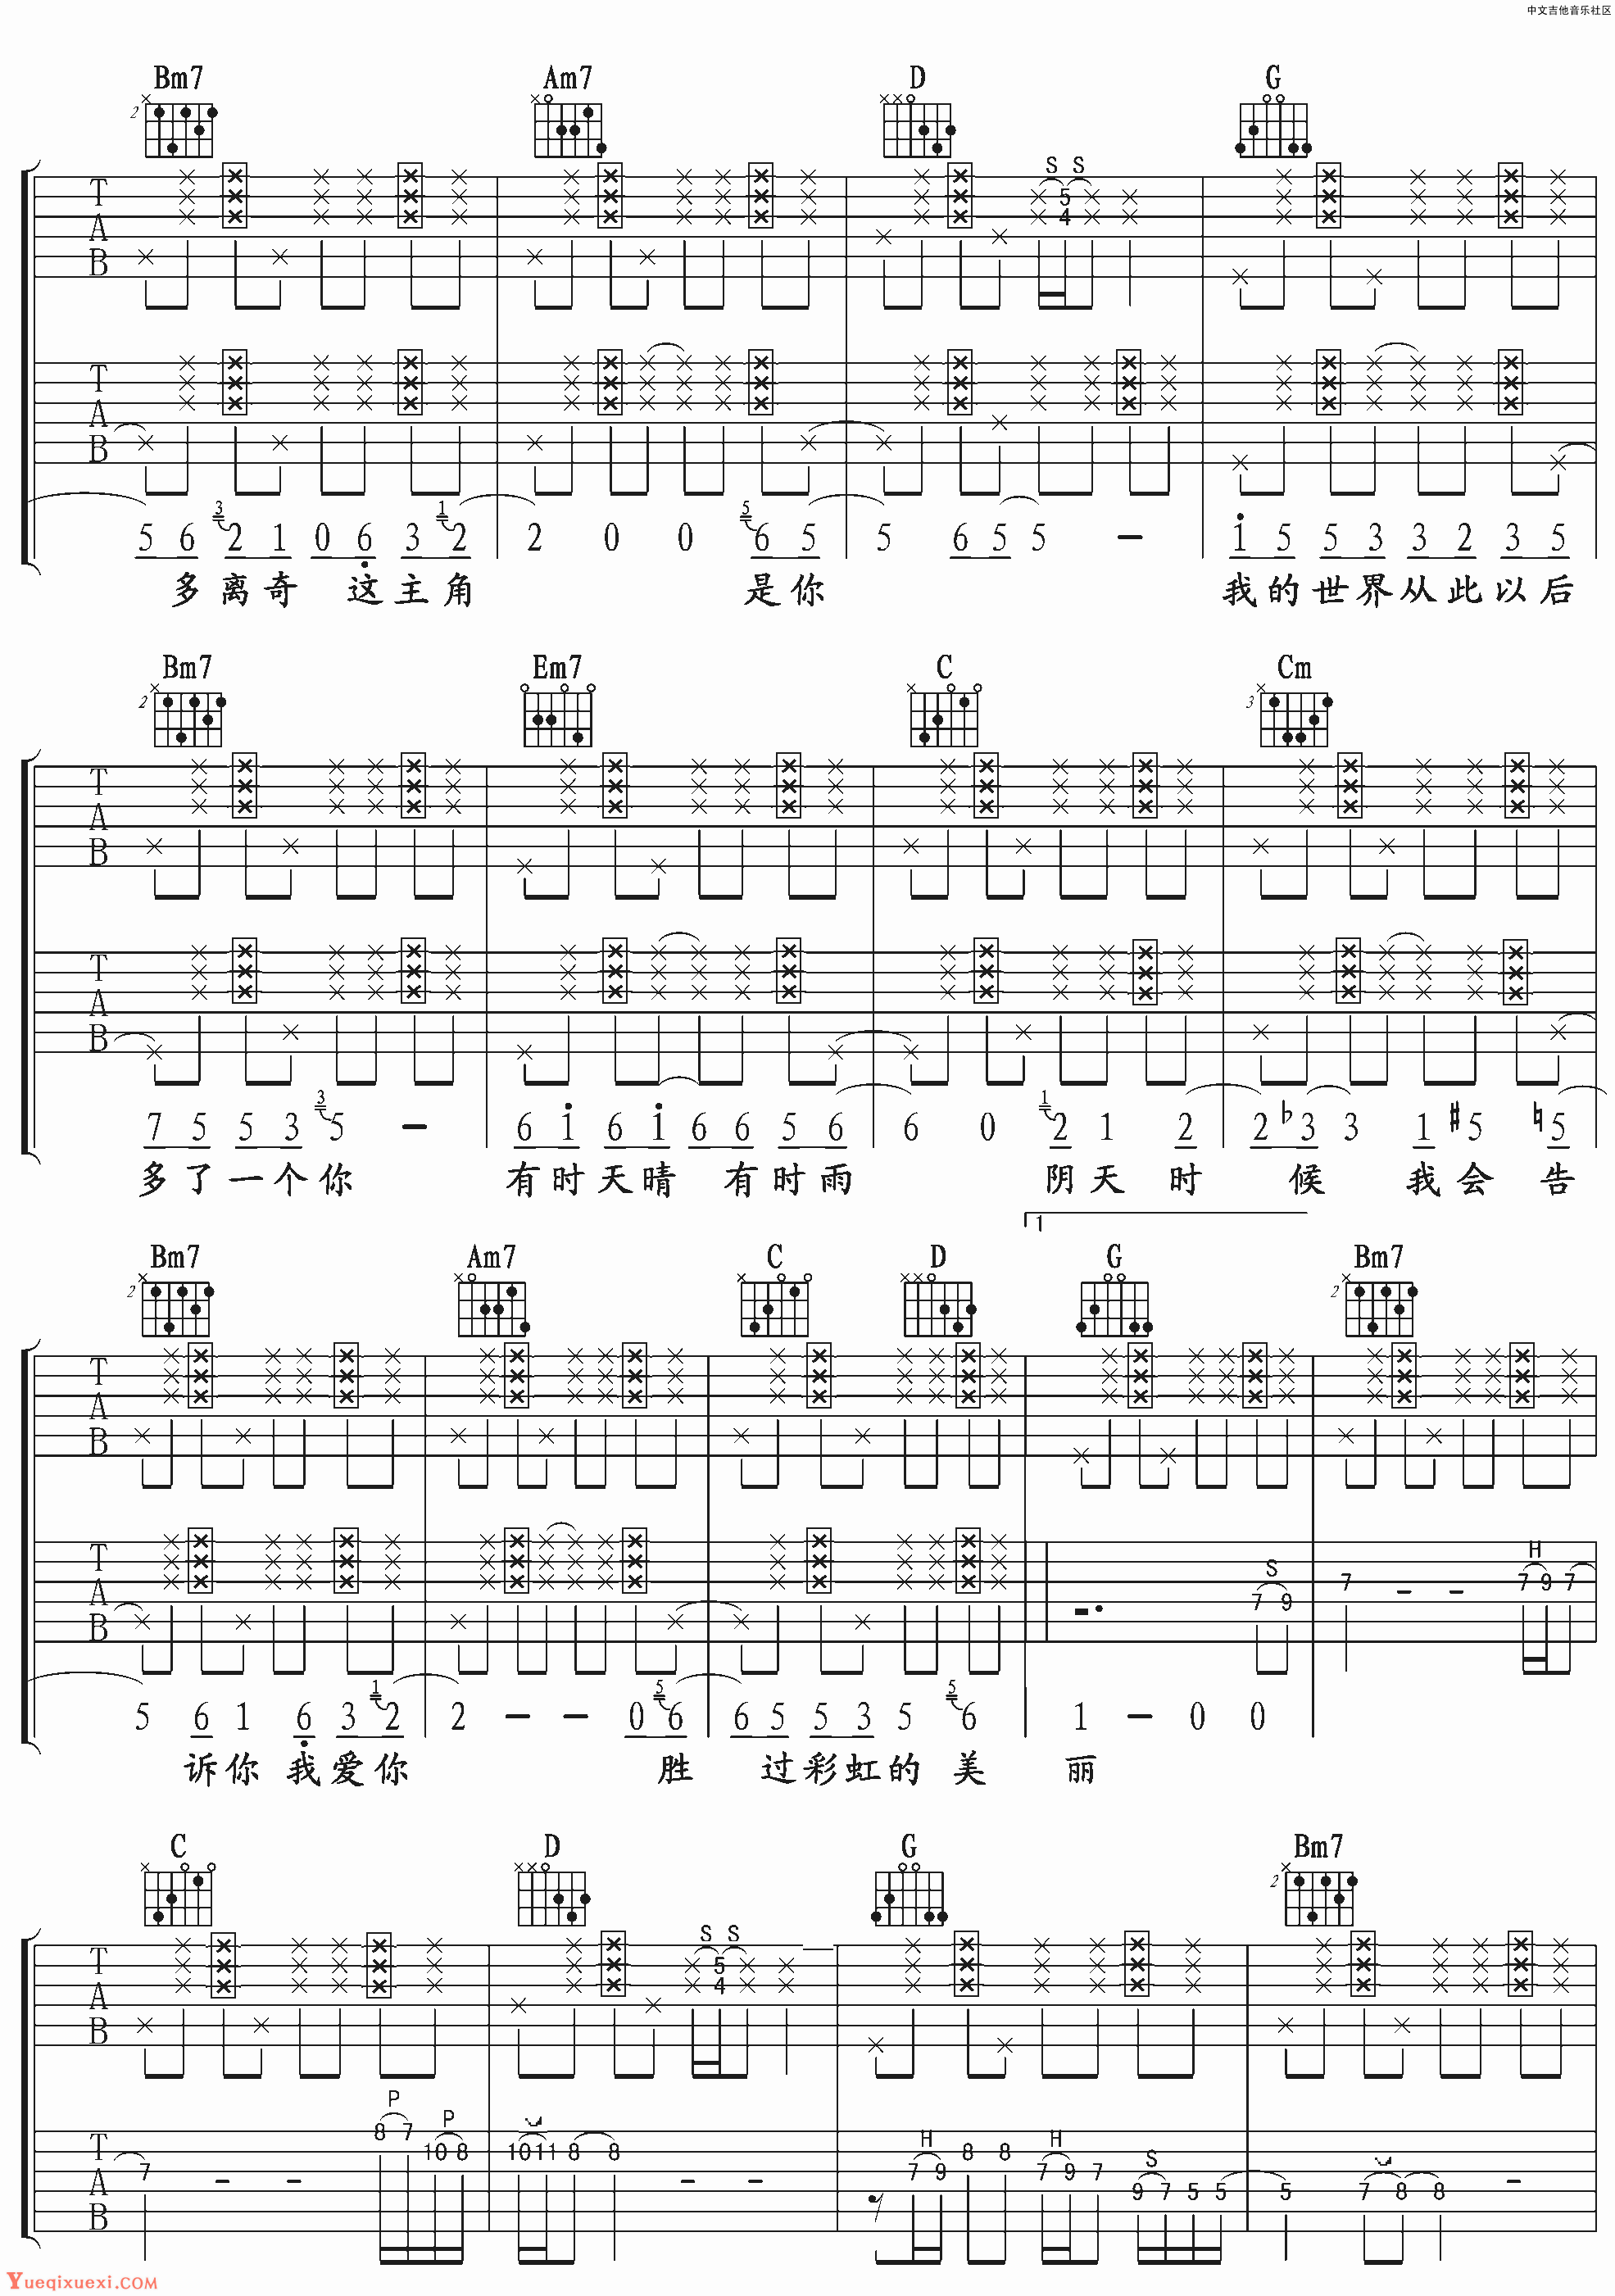 羽泉《彩虹》吉他谱-Guitar Music Score - GTP吉他谱